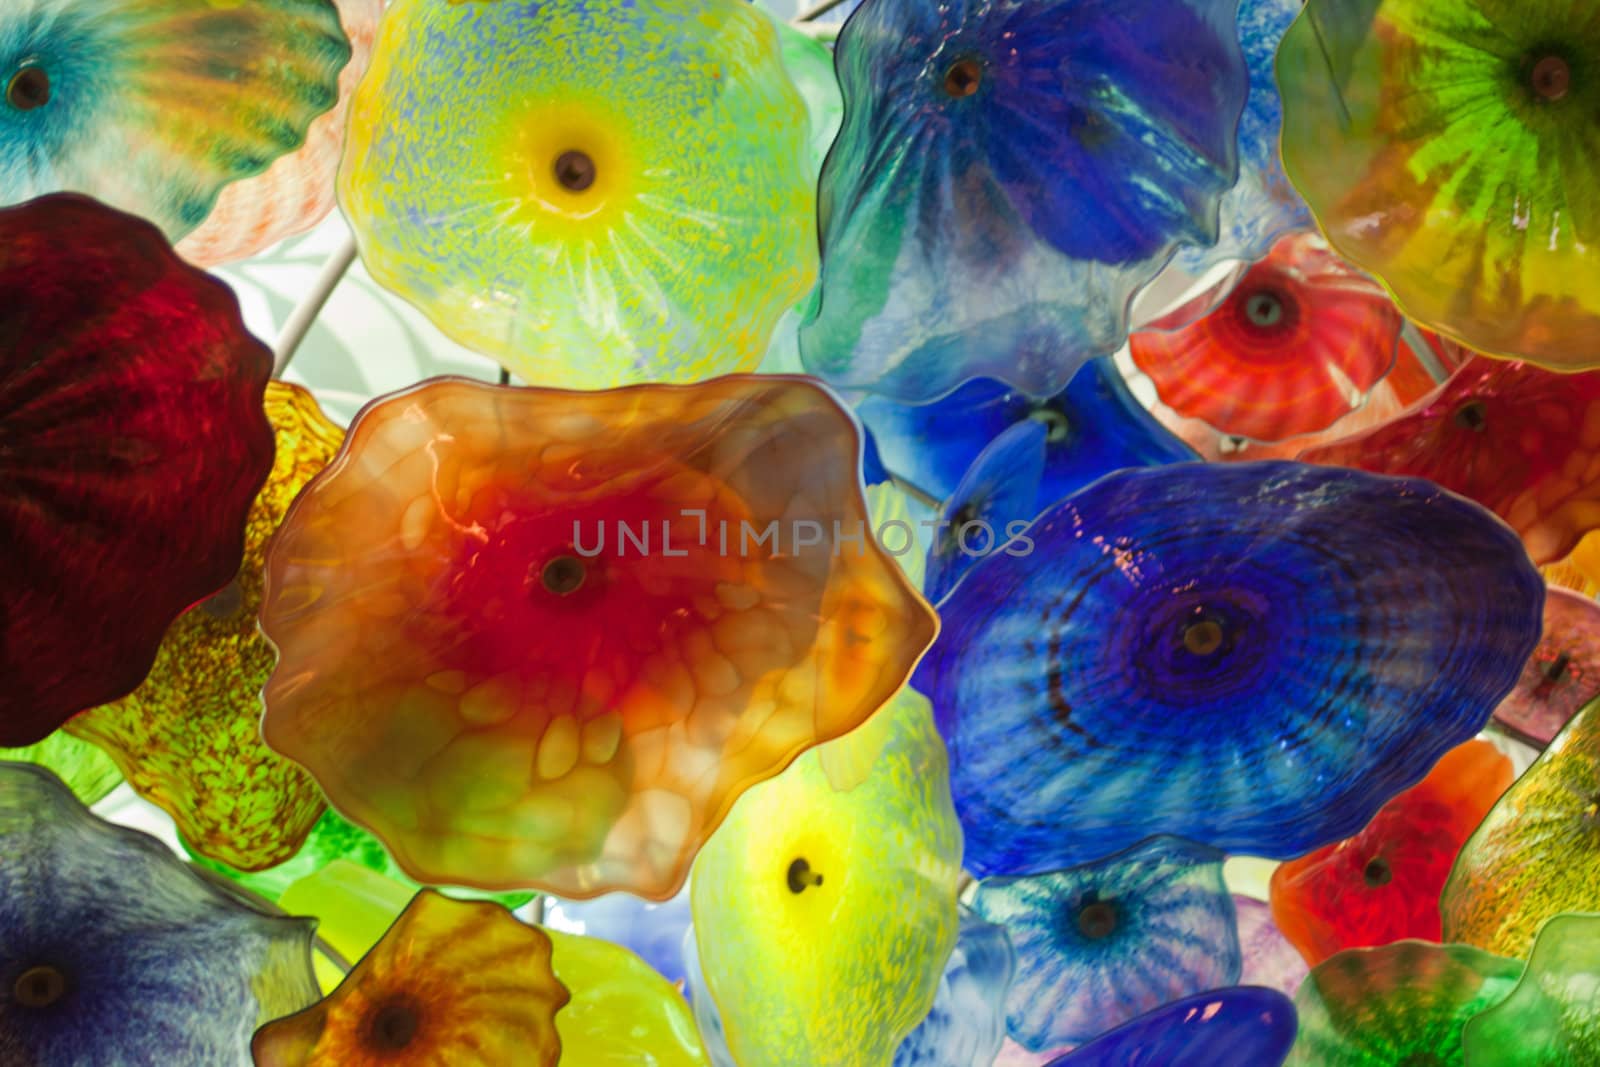 Jelly fish glass flowers by GunterNezhoda